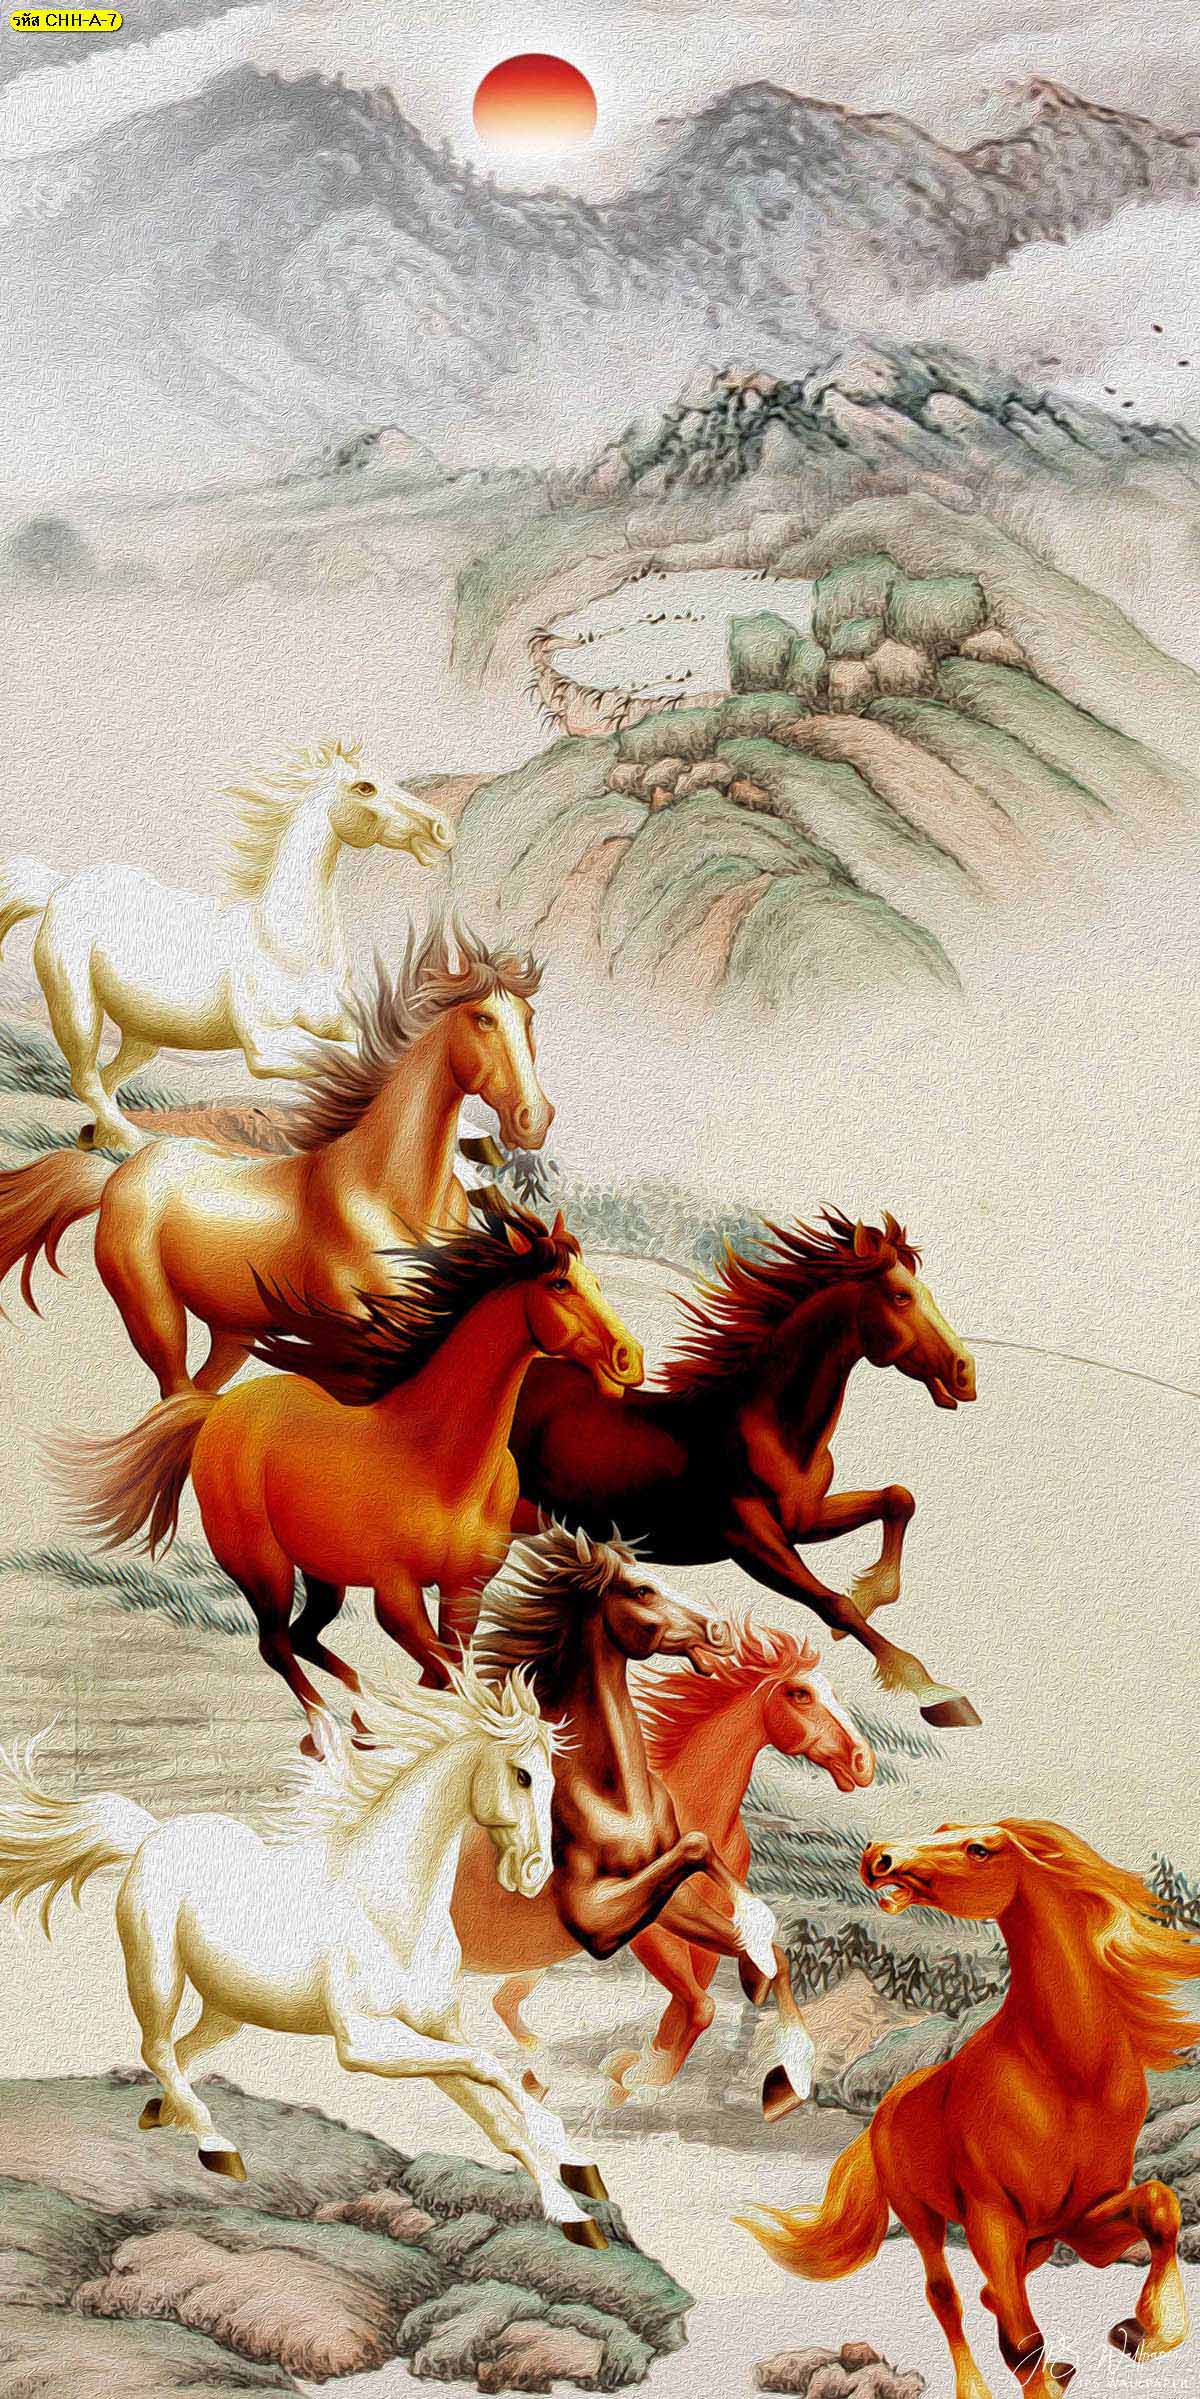 วอลเปเปอร์ม้ามงคล ภาพม้ามงคลเสริมฮวงจุ้ย ฝูงม้ากำลังวิ่งไปข้างหน้าแปดตัวบนภูเขา